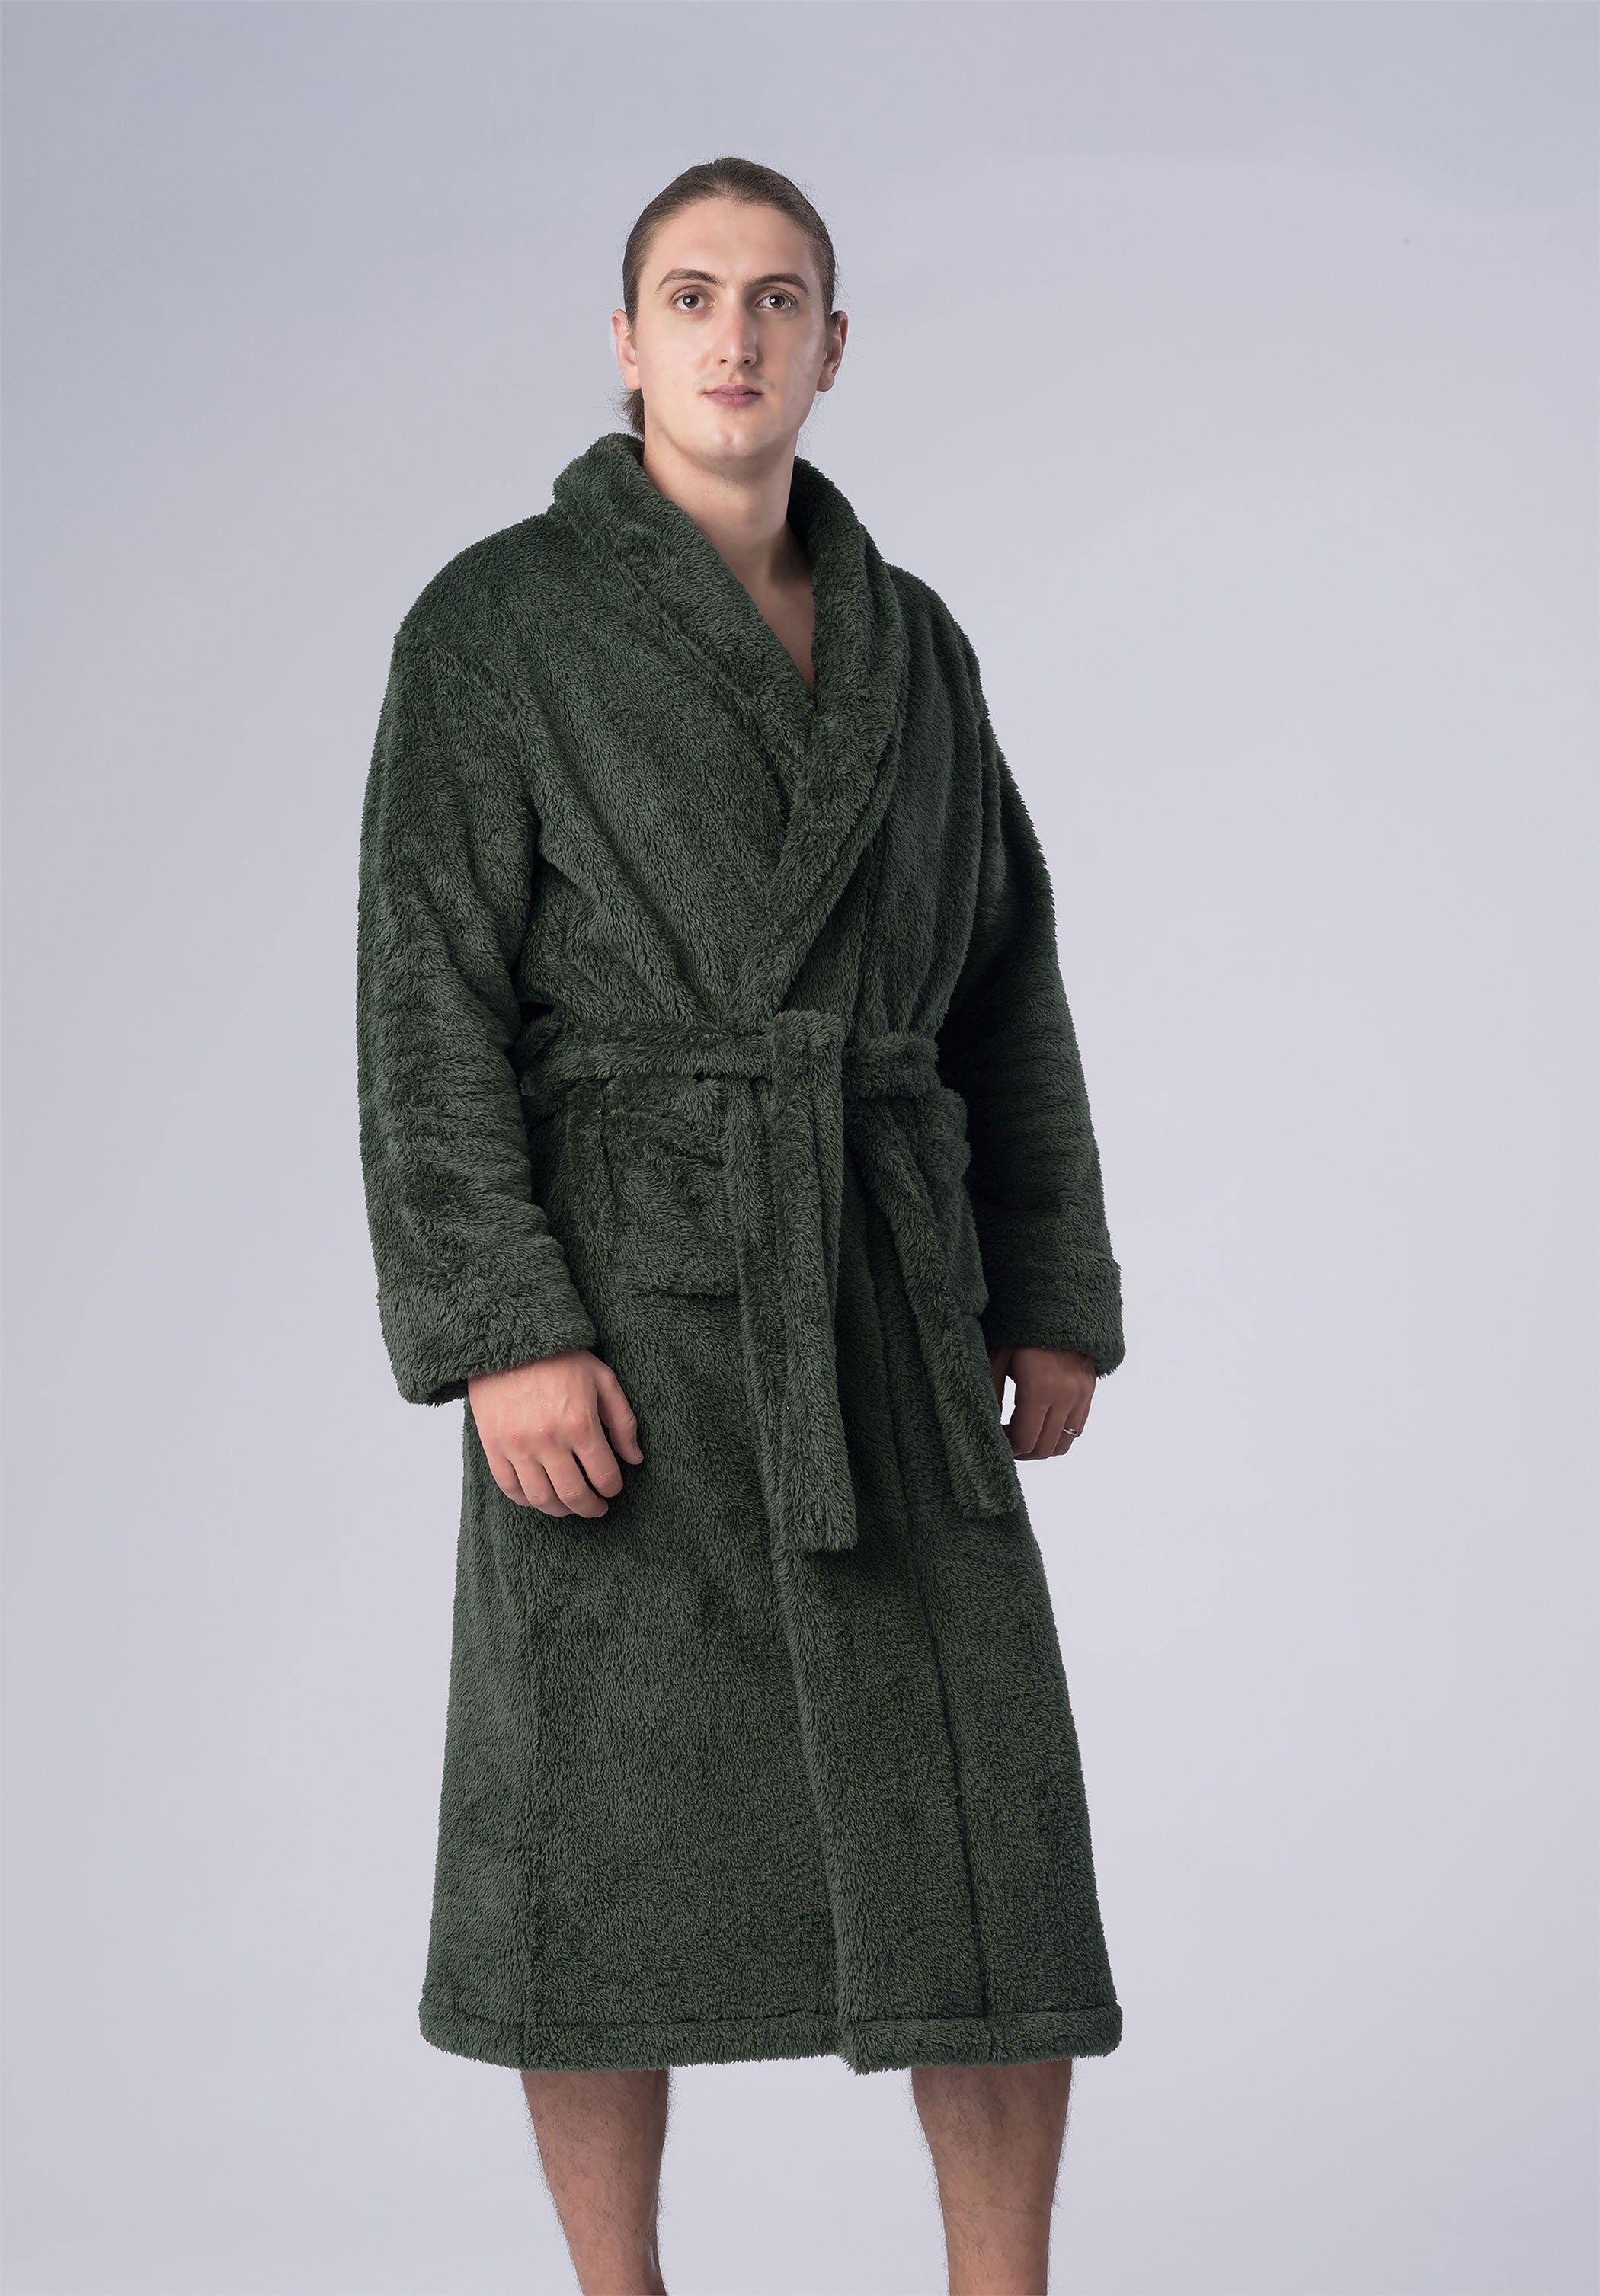 Fur Winter Robes for Men in Nepal – Harrington Nepal